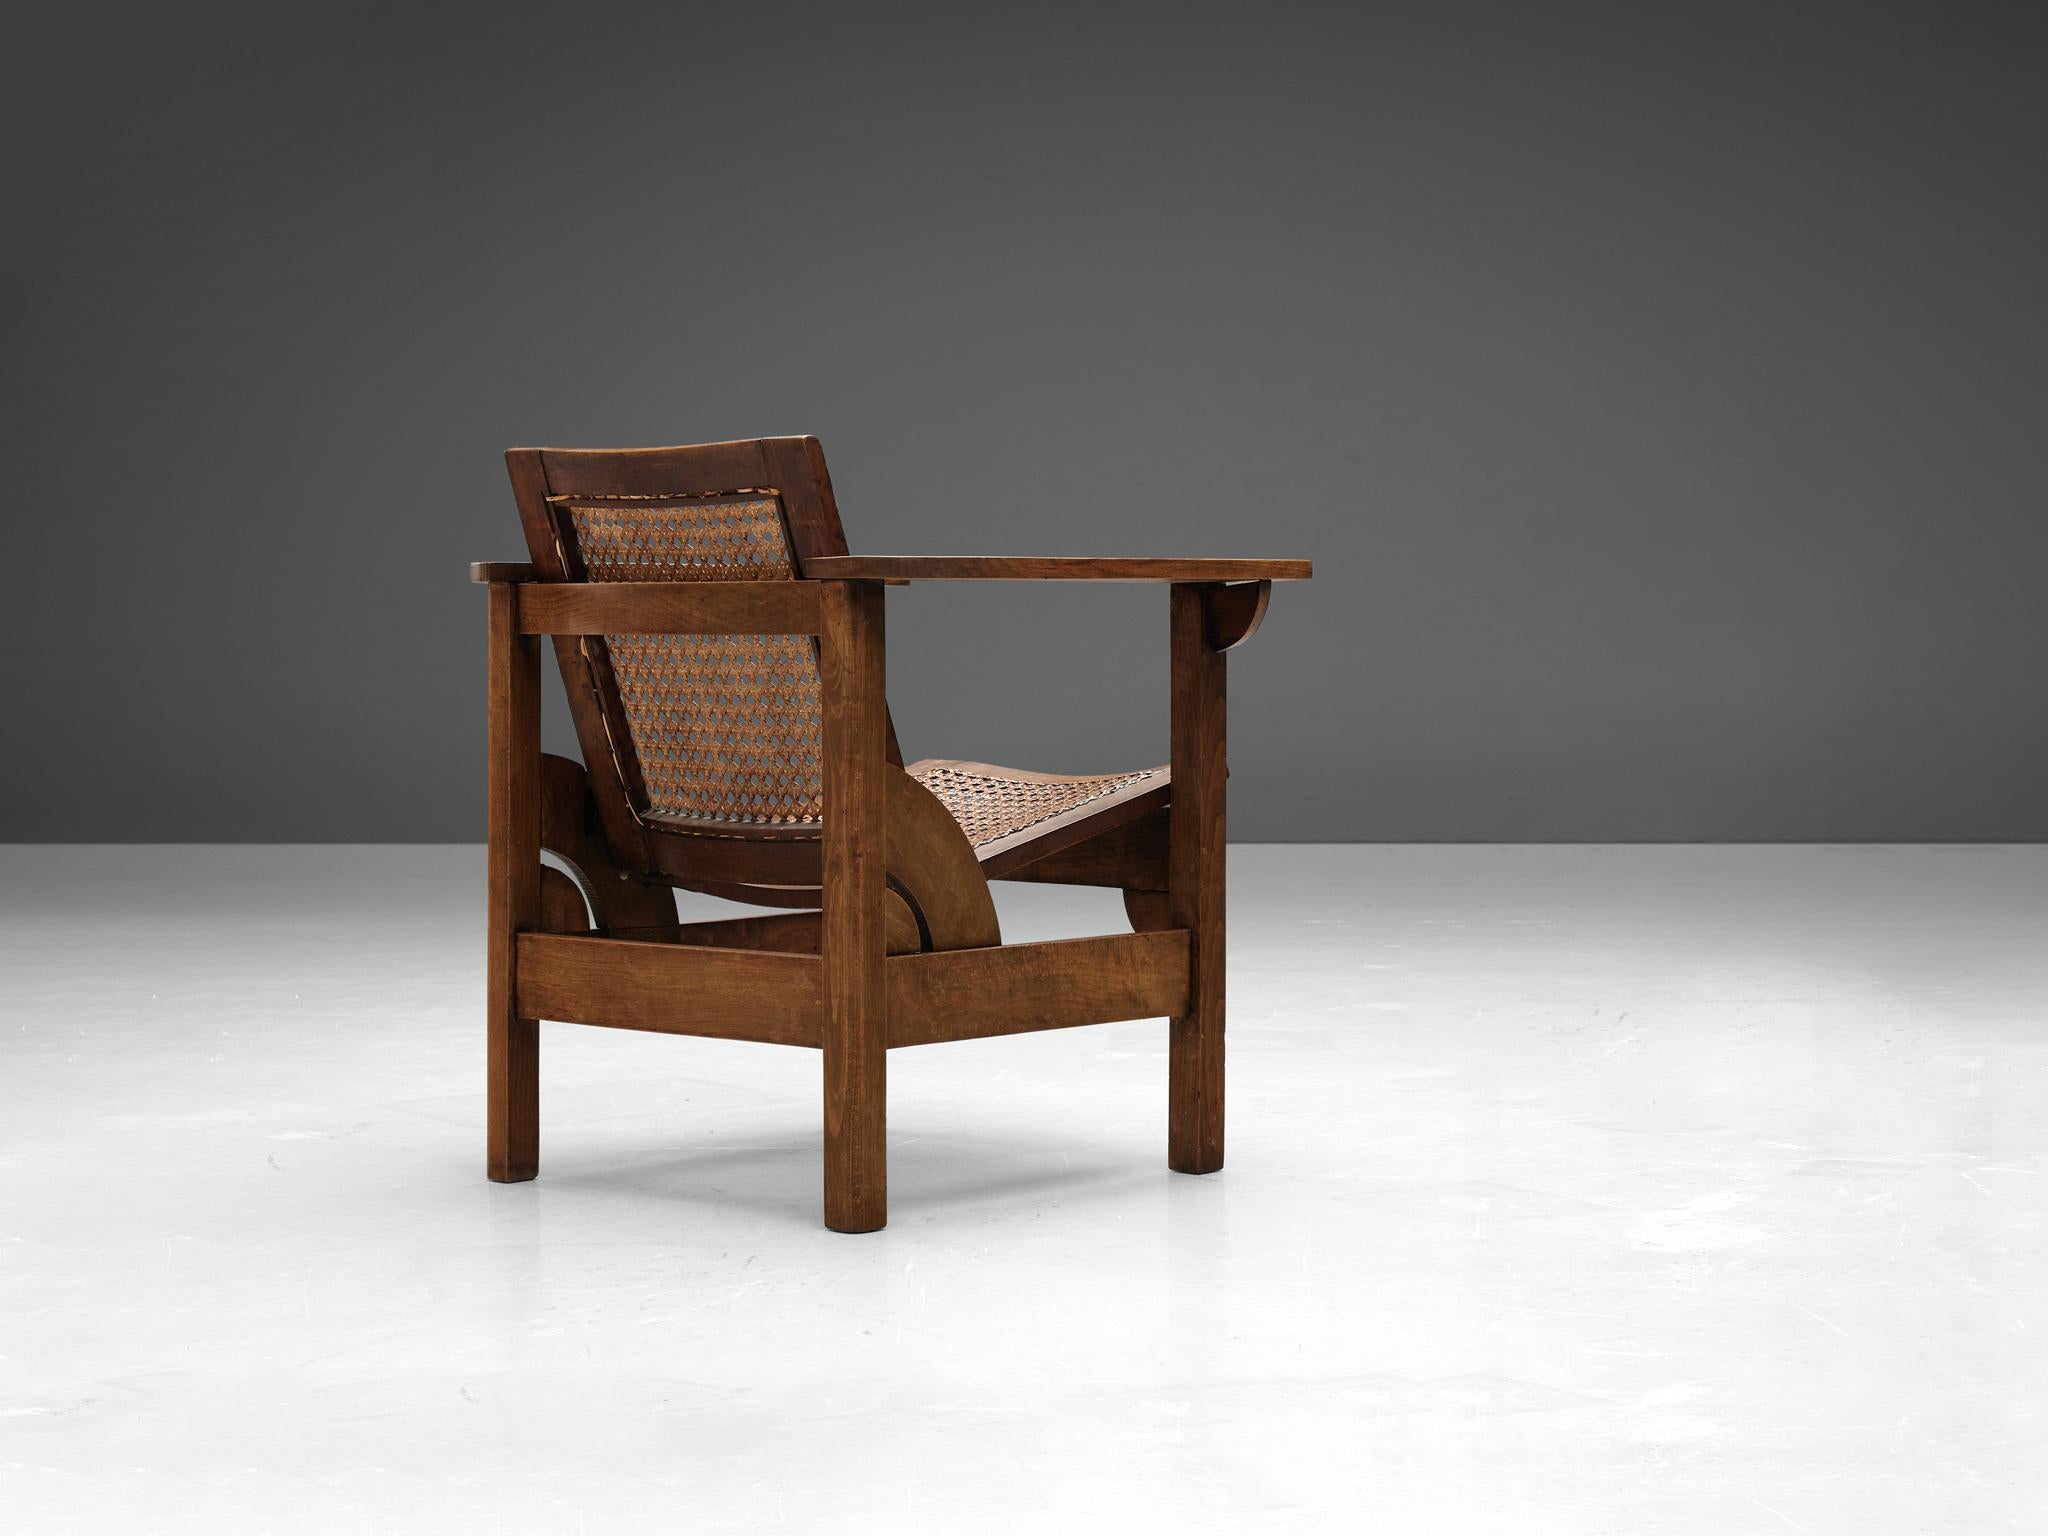 Pierre Dariel, fauteuil 'Hendaye', hêtre, cannage, France, années 1930. 

Robuste chaise longue modèle Hendaye conçue par Pierre Dariel dans les années 1930. L'ossature en bois est exécutée en hêtre, tandis que l'assise et le dossier sont en